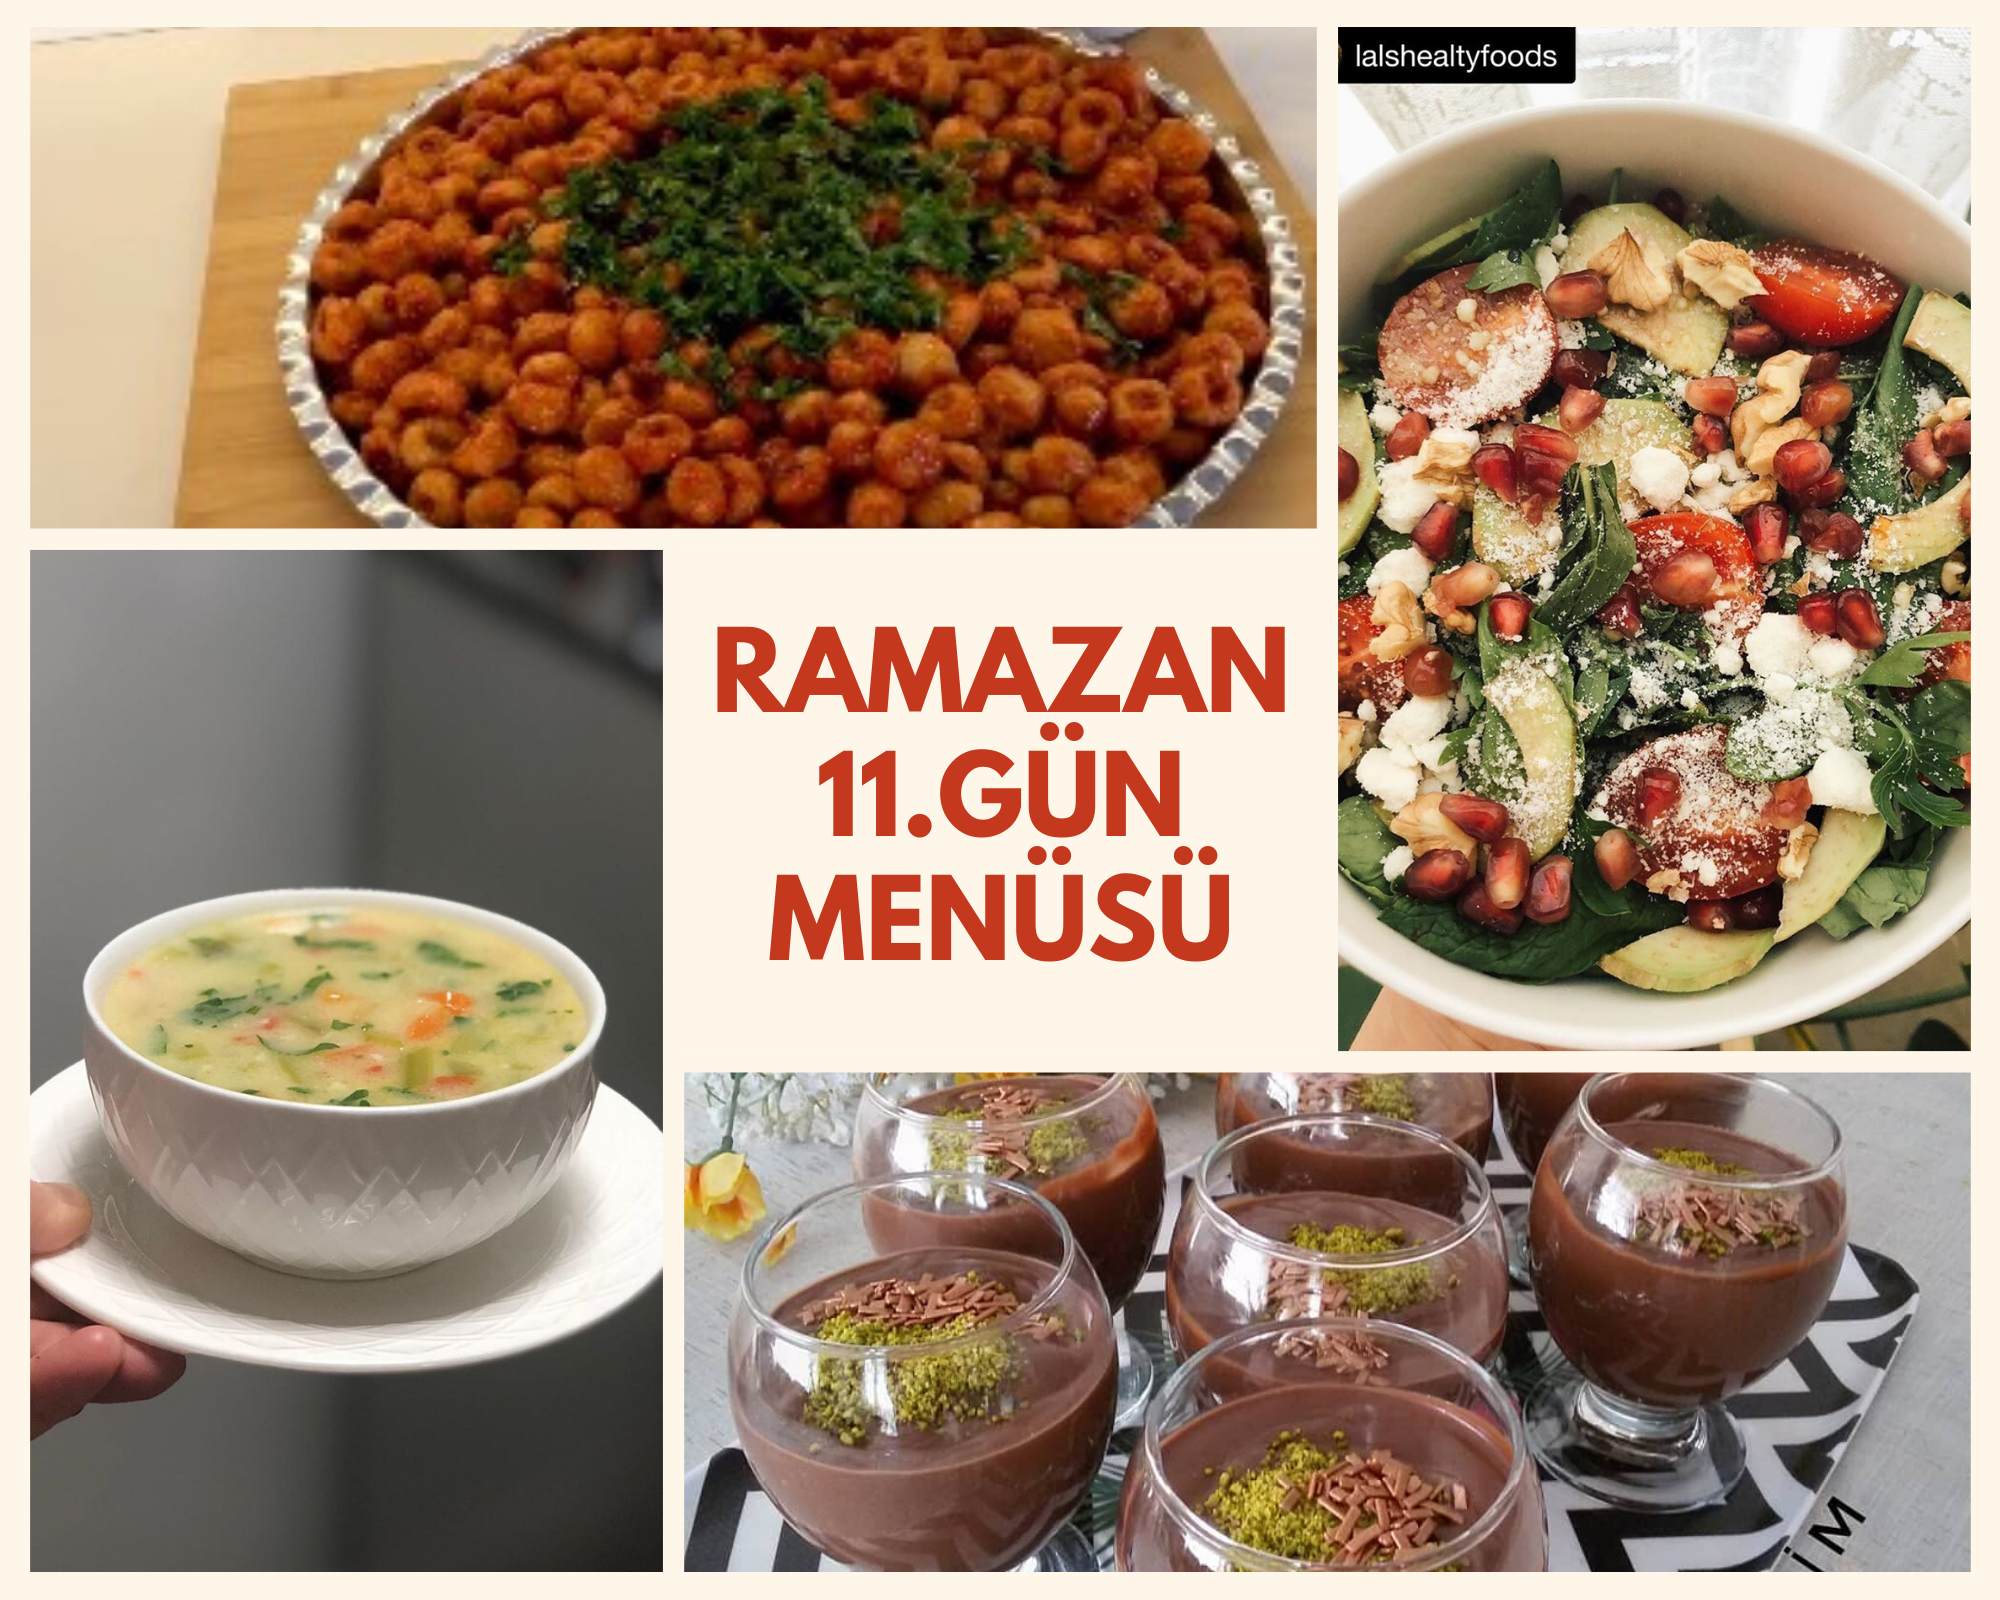 Ramazan 11. gün menüsü - Sütlü sebze çorbası  - Fellah köftesi  - Narlı salata - Spungle